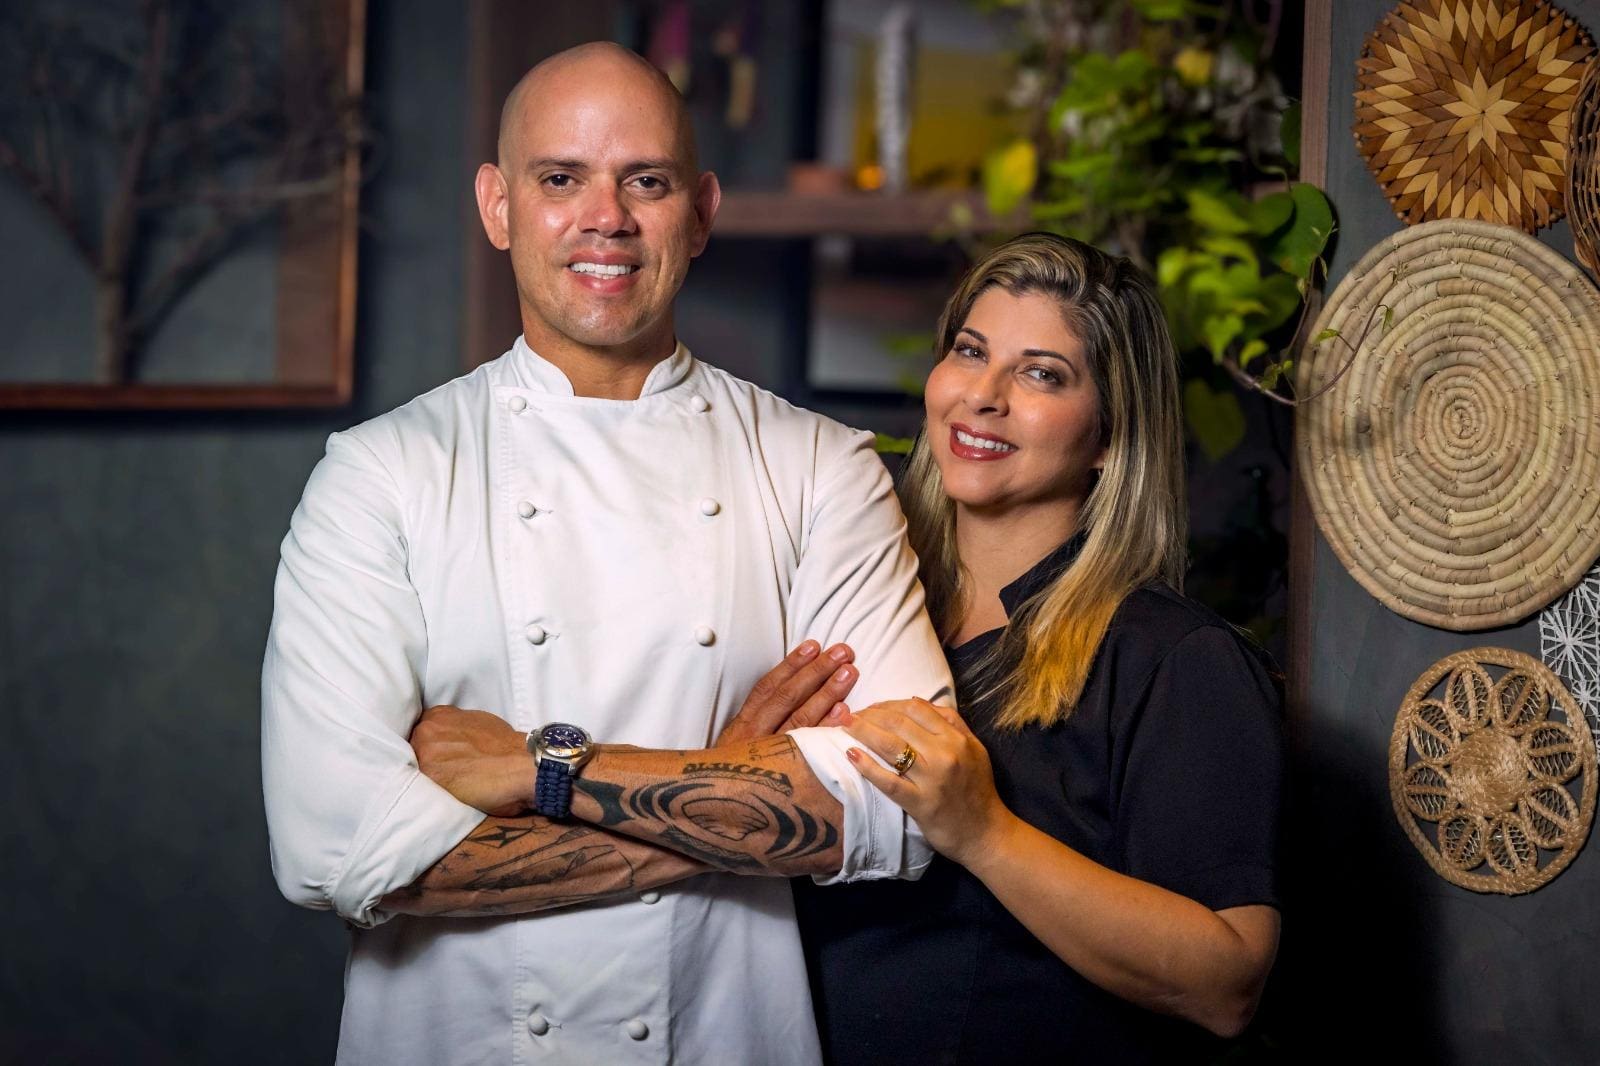 Os chefs Fabrício Lemos e Lisiane Arouca celebram os dez anos da rede Origem